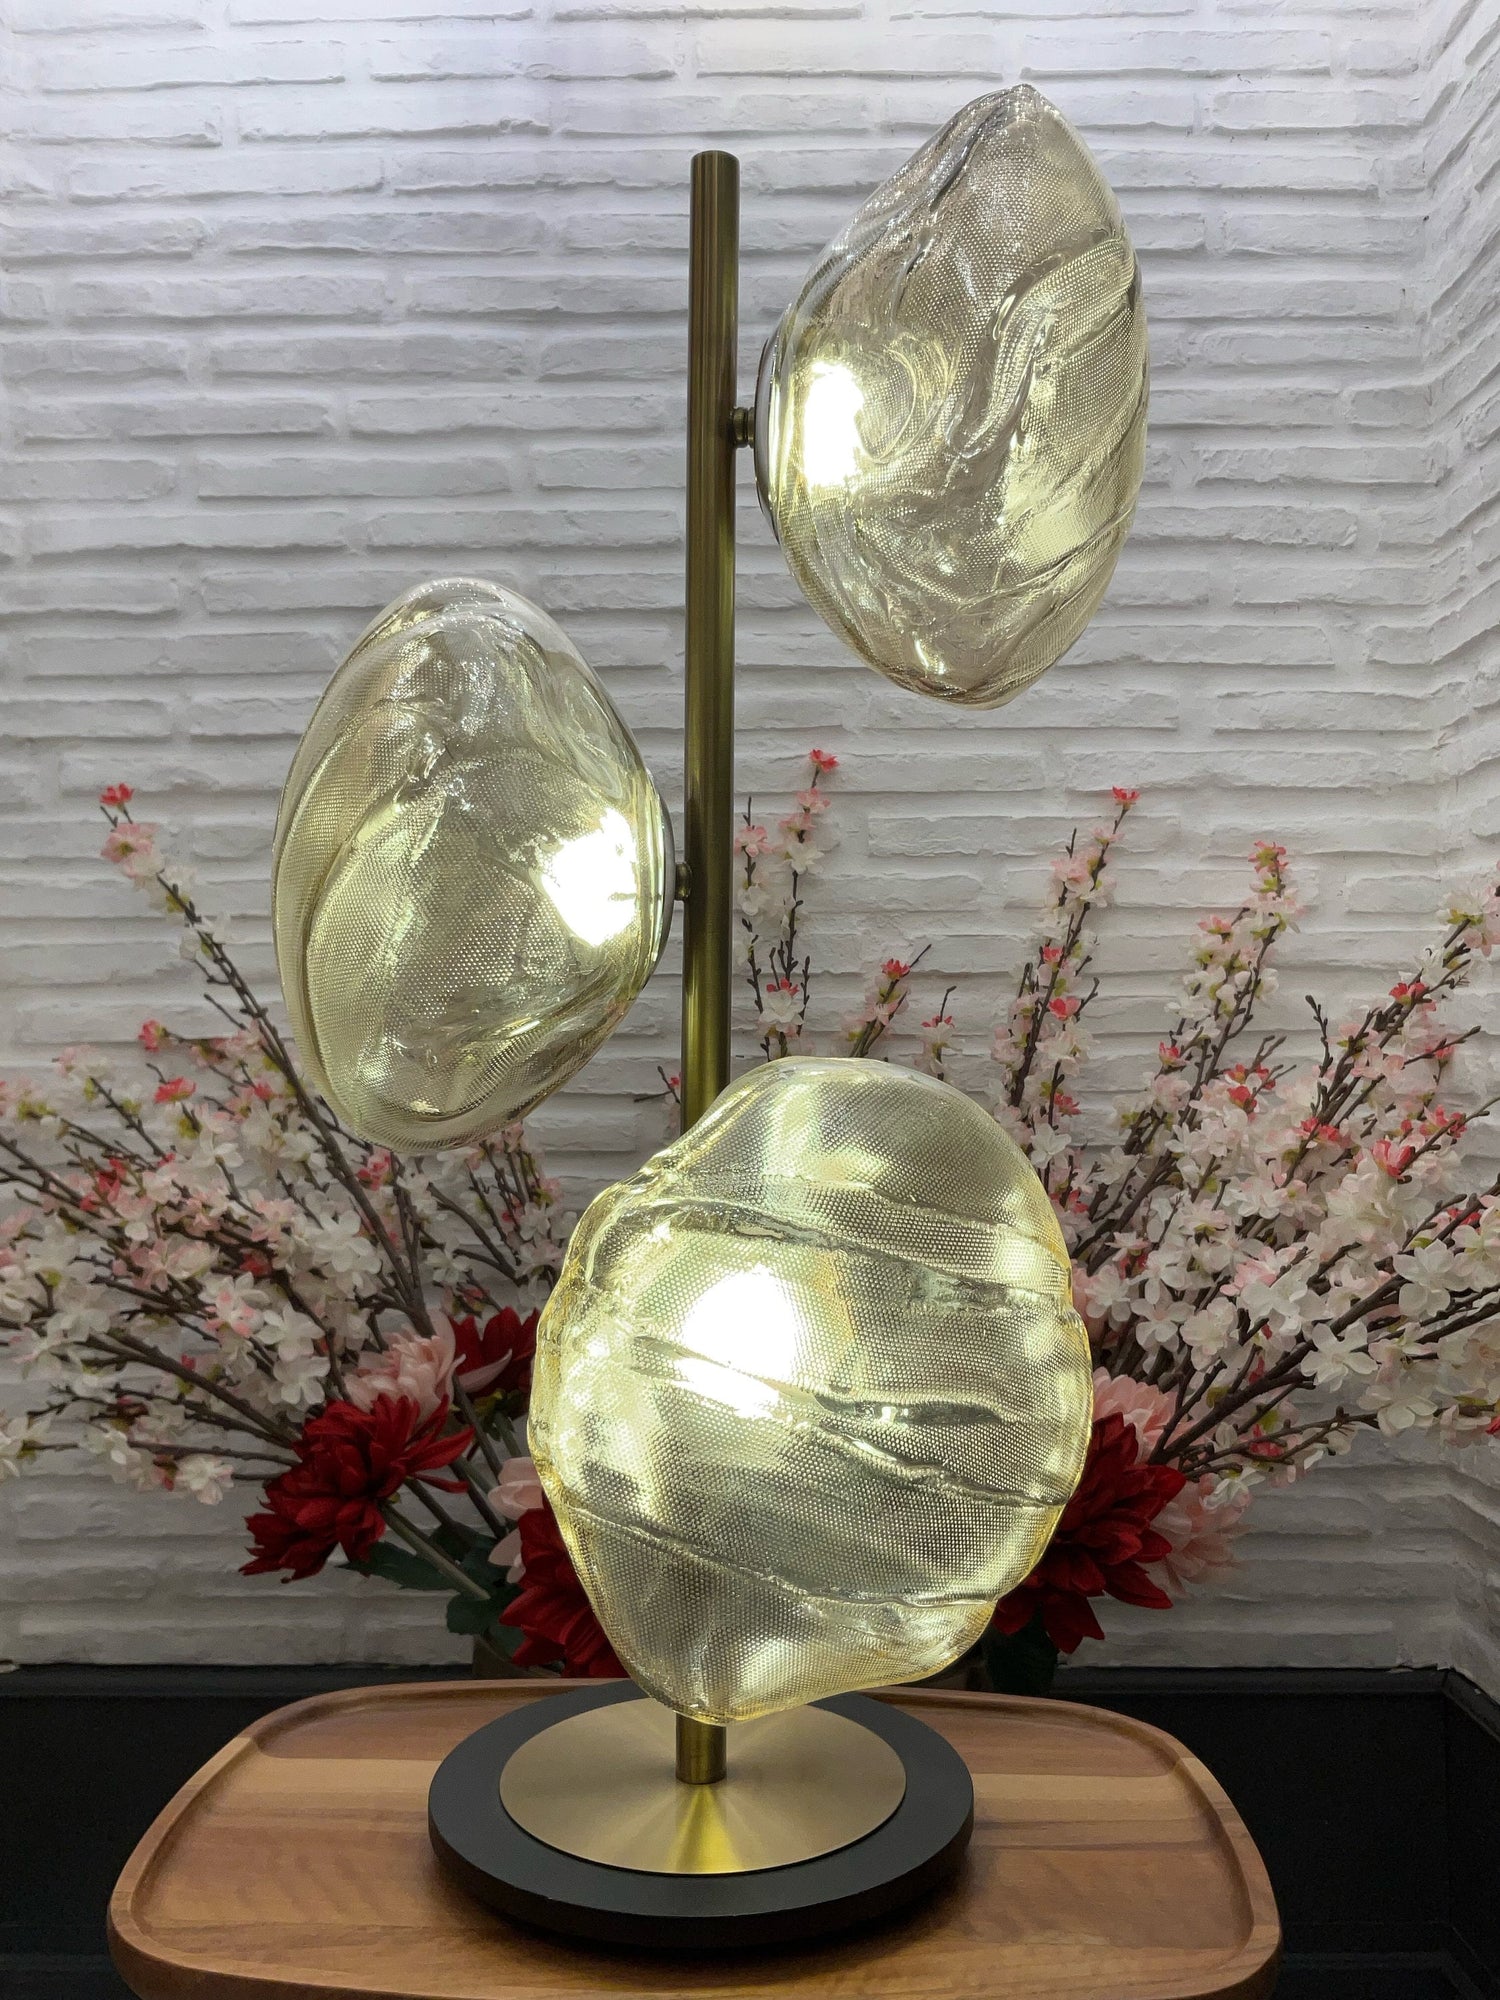 Three Smoky & Amber Glasses Table Lamp, Art Deco Handmade Chrome Lighting, Home Decor Brass Table Light, Bedside Lamp, MODEL : HOBART